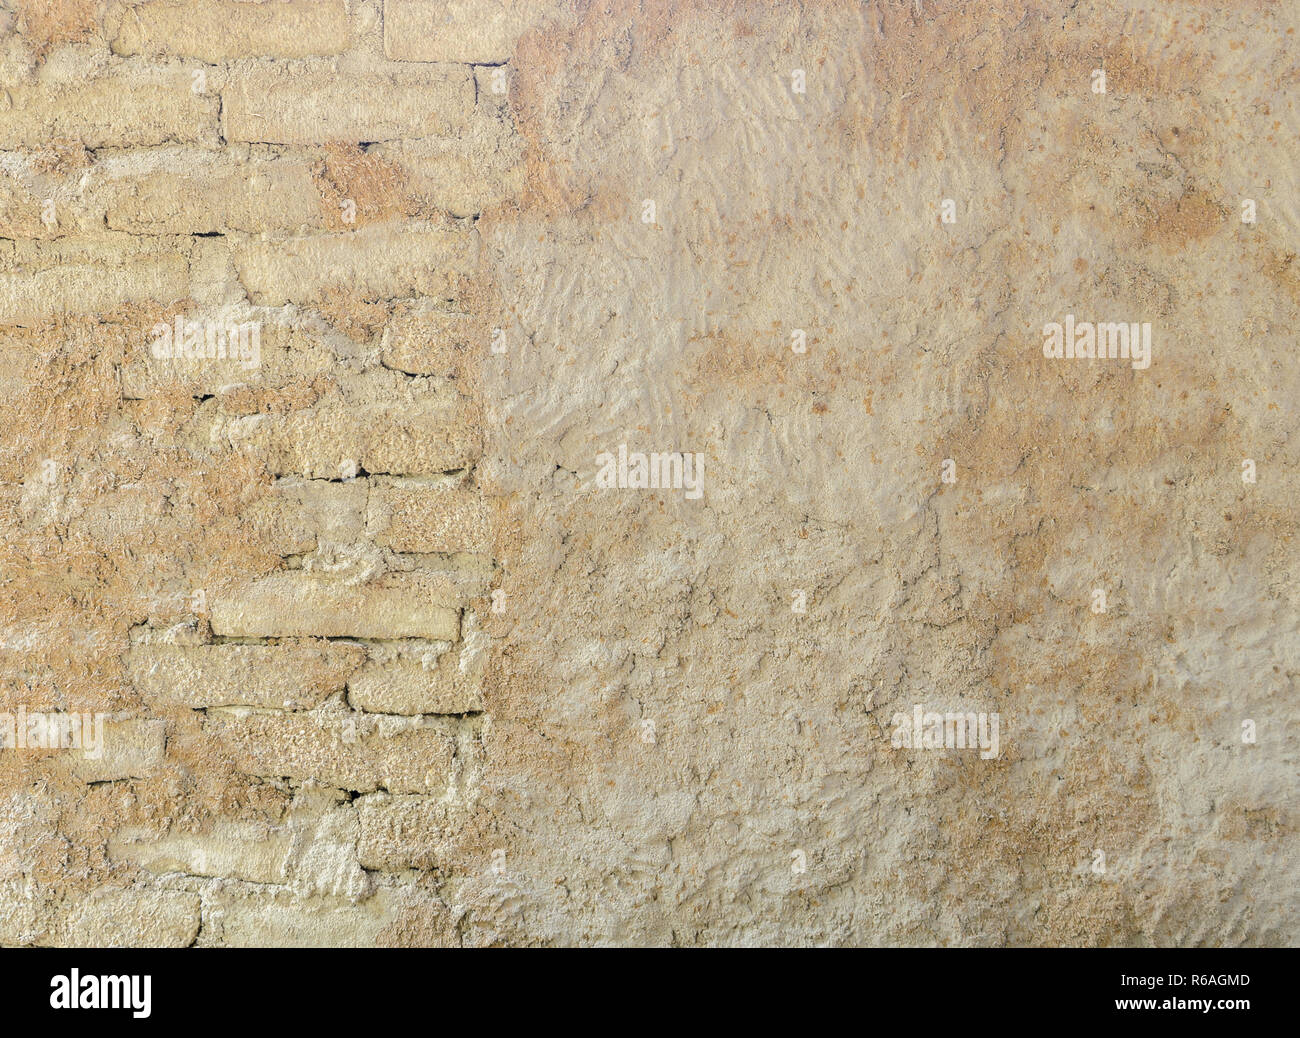 Mur d'argile de boue Banque de photographies et d'images à haute résolution  - Page 5 - Alamy